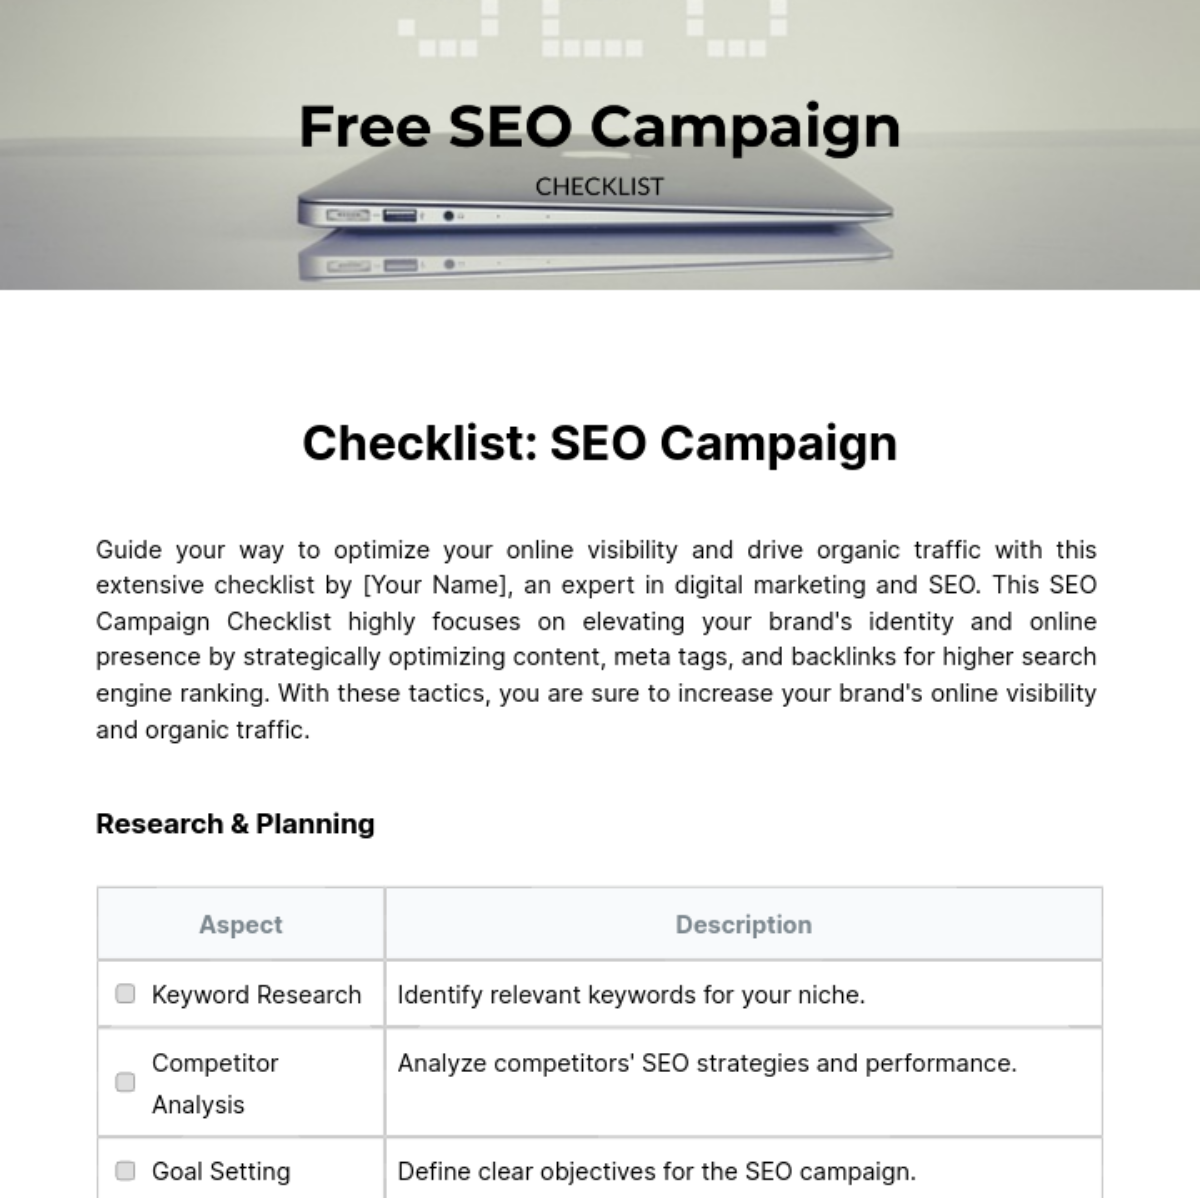 SEO Campaign Checklist Template